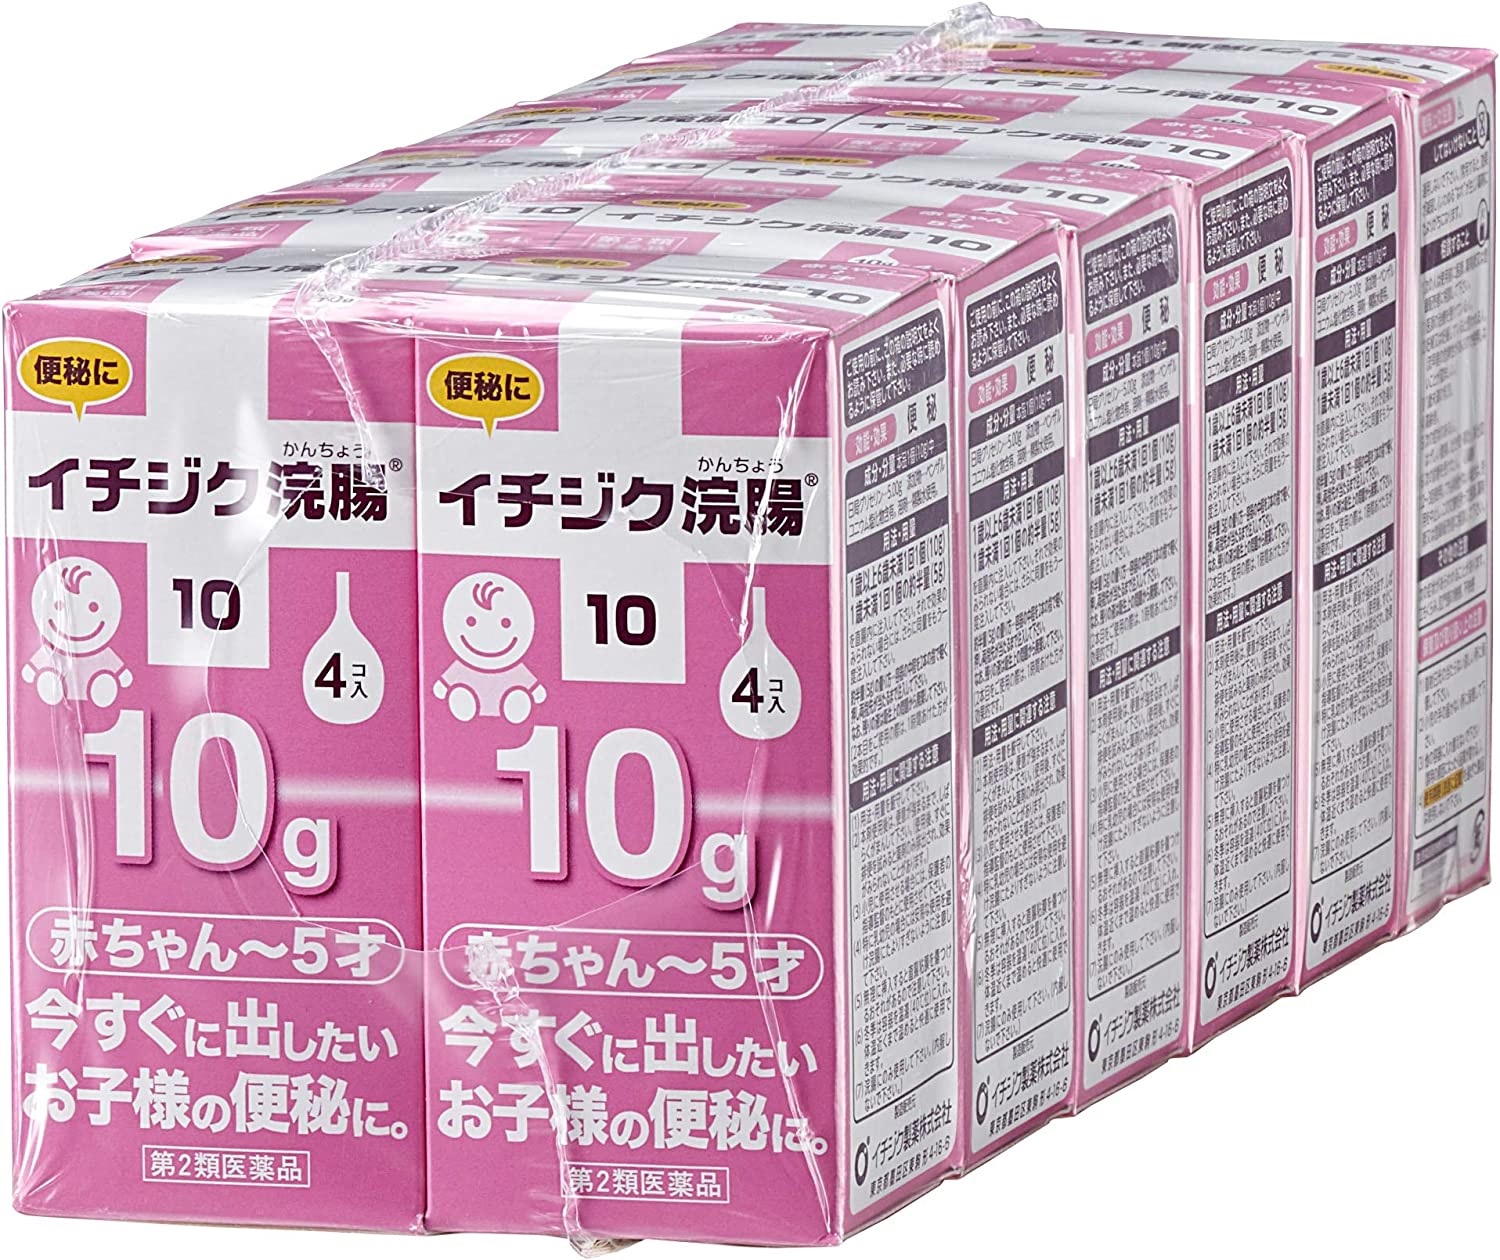 イチジク 製薬 イチジク浣腸 10g×4コ入り×12箱（計48回分)